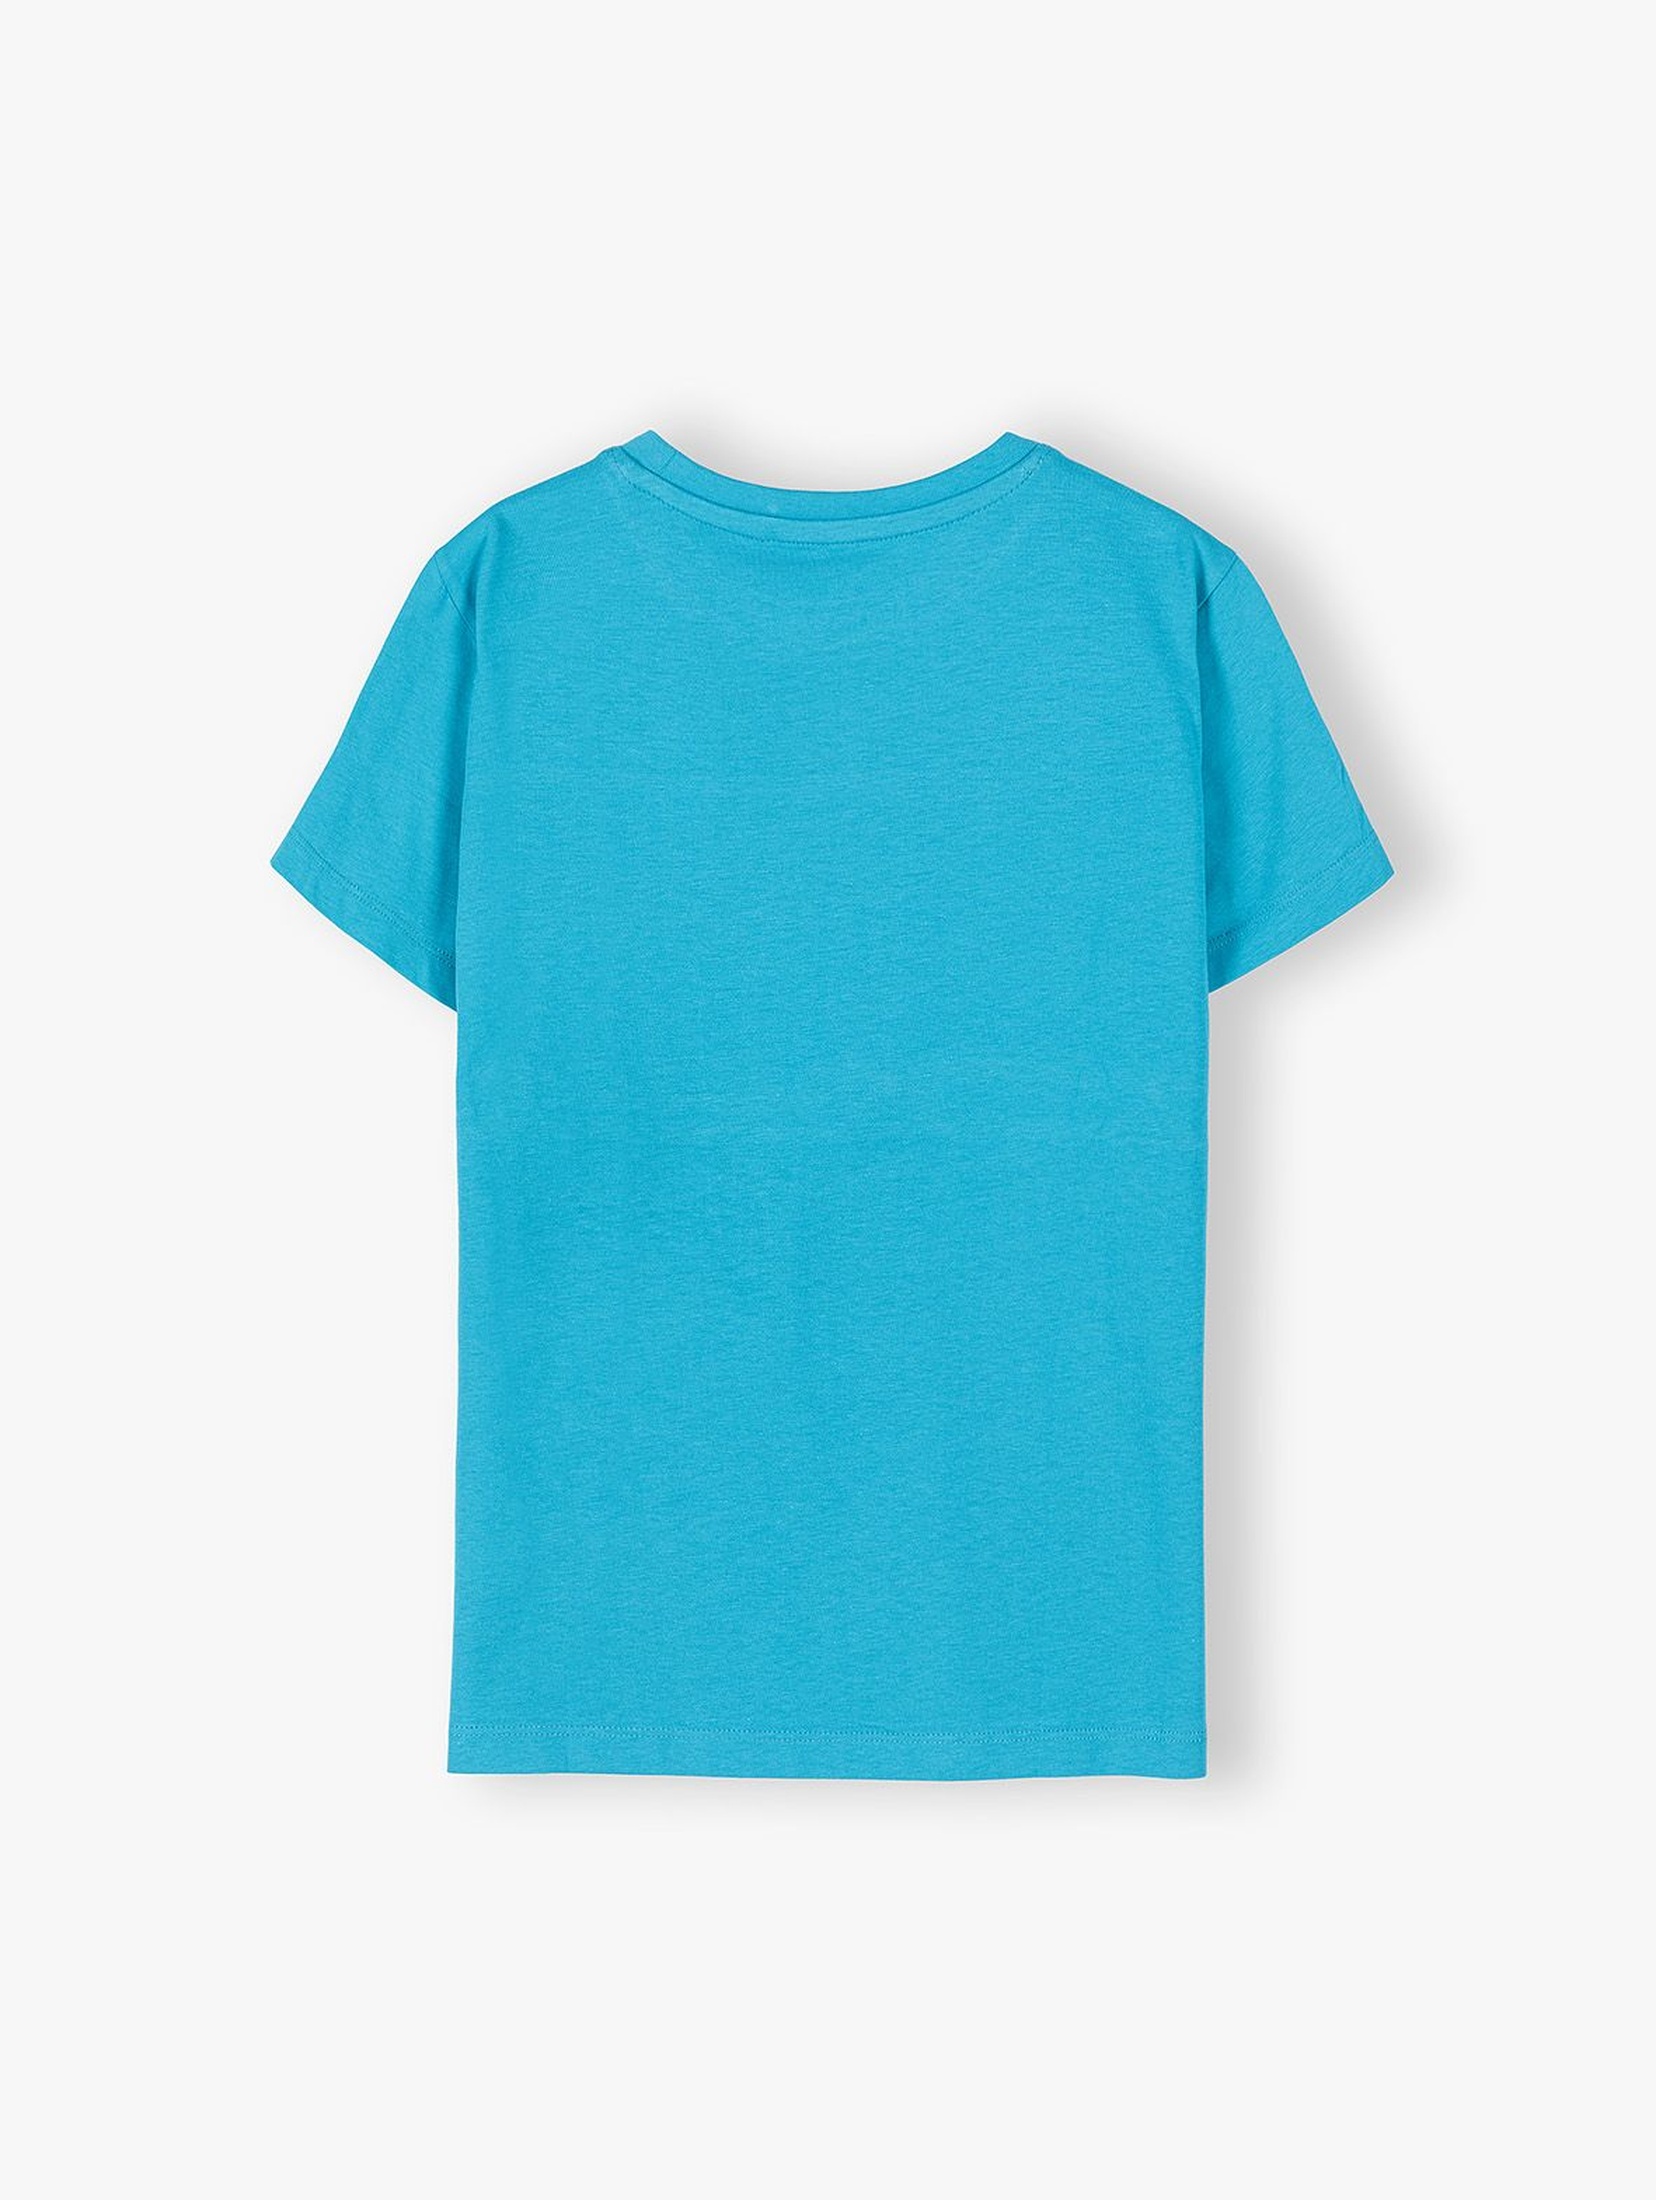 T-shirt chłopięcy niebieski z nadrukiem